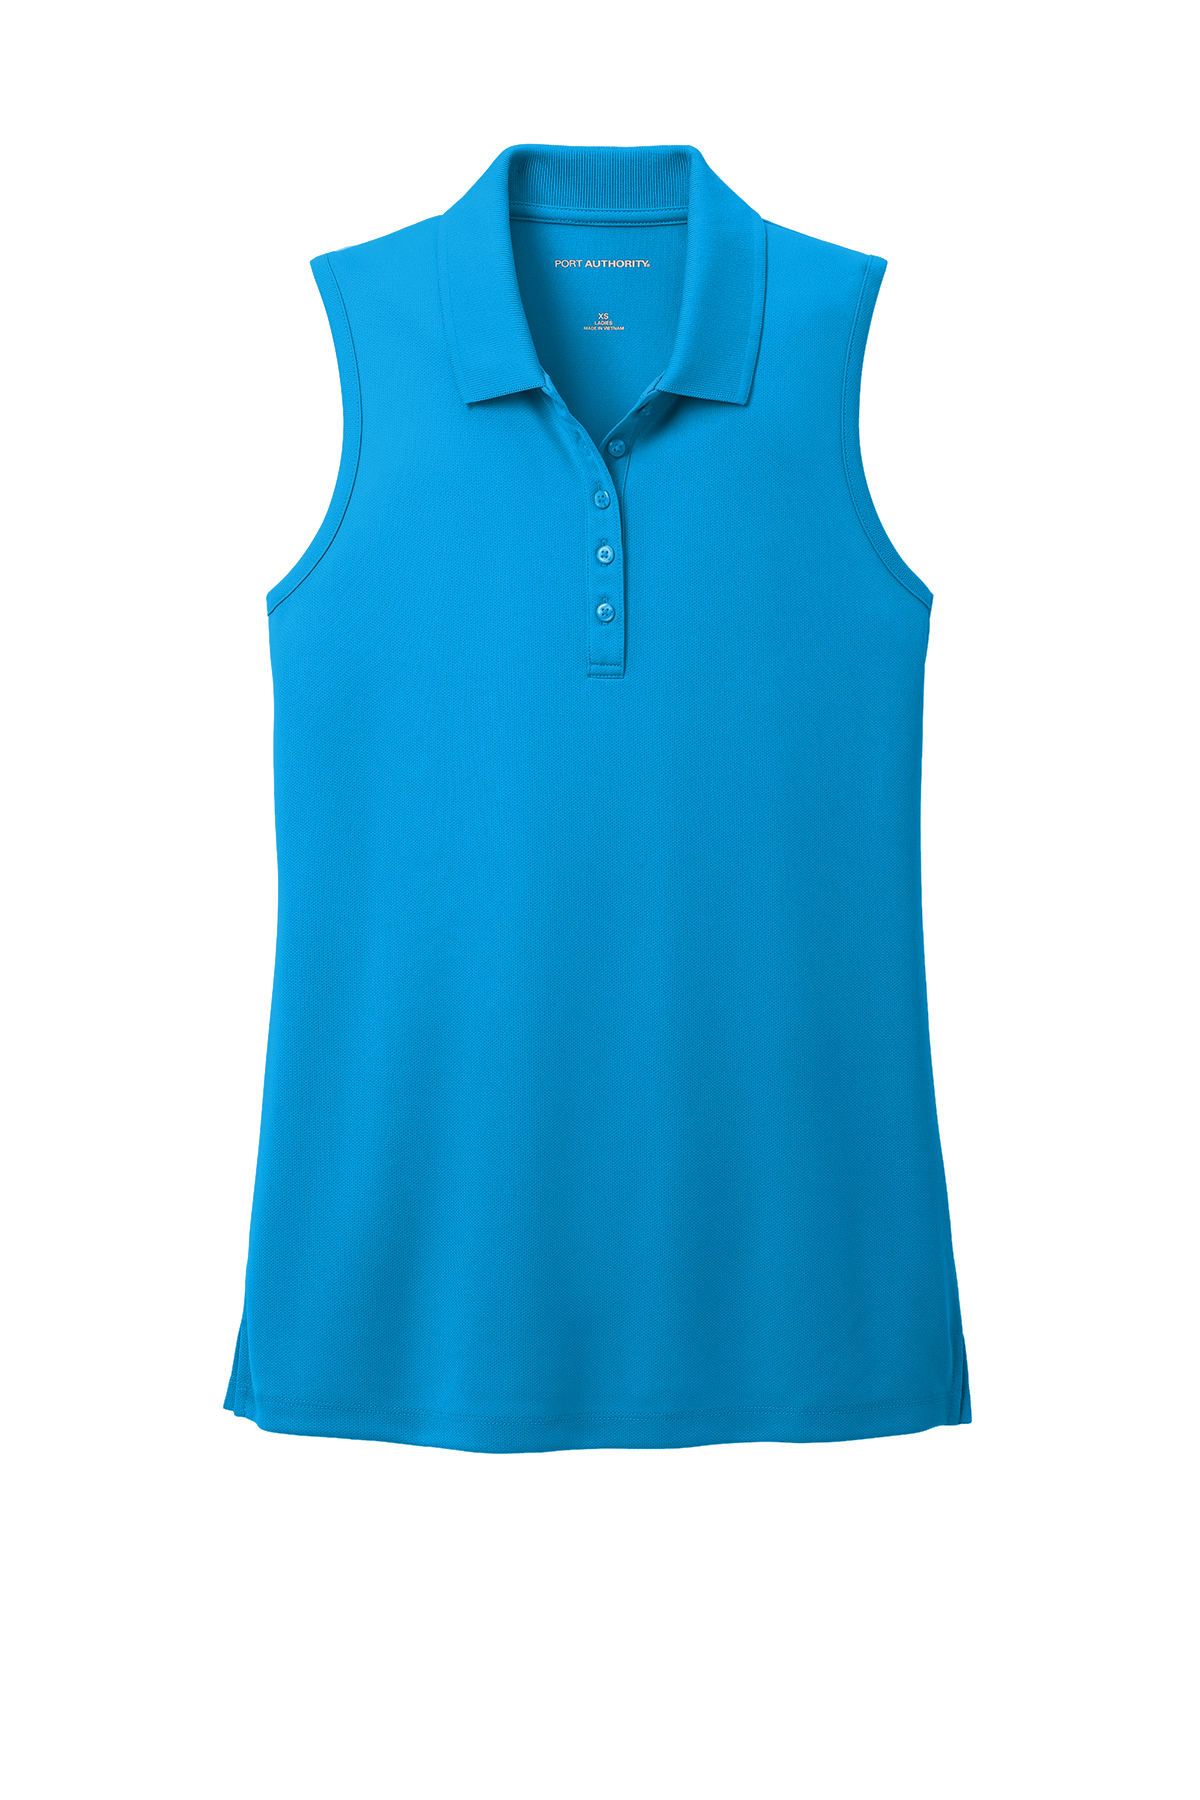 Port Authority® Blusa polo para dama con protección UV, ideal para